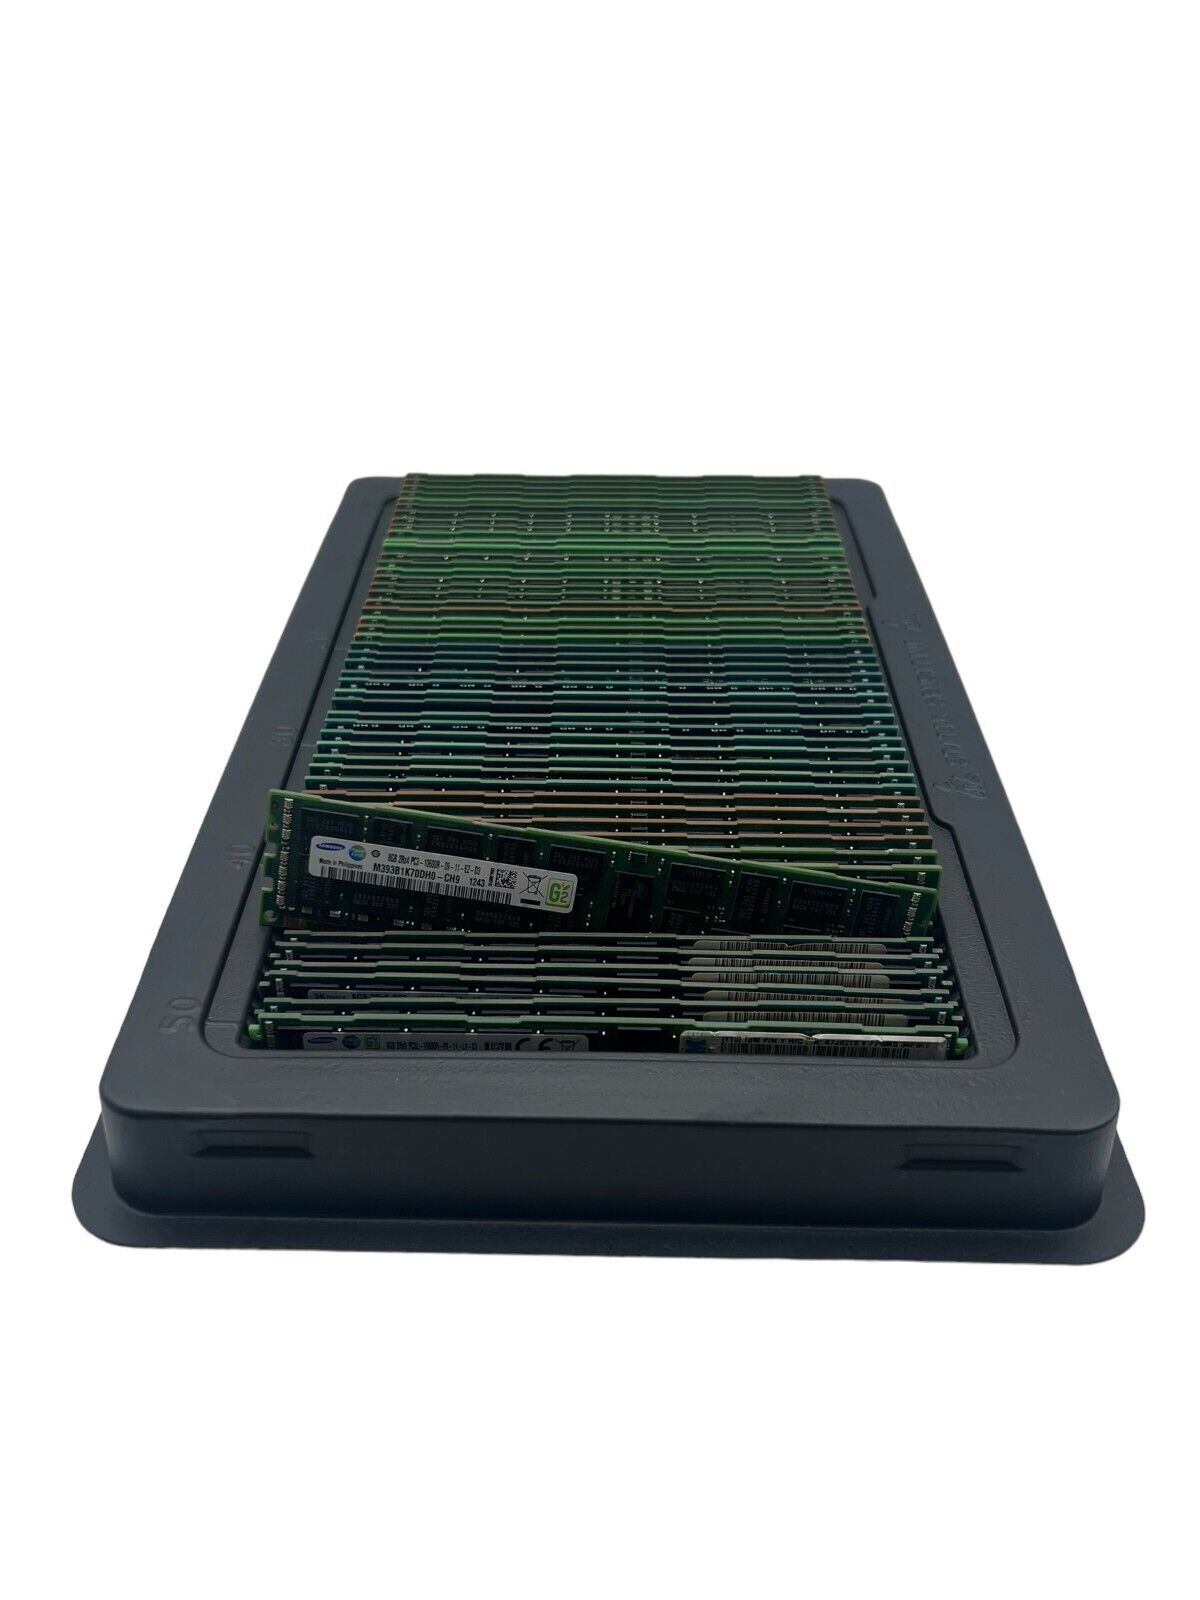 400GB - Lot of 50 - 8GB DDR3 PC3-10600R/12800R/8500R Server ECC/Reg ALL Tested